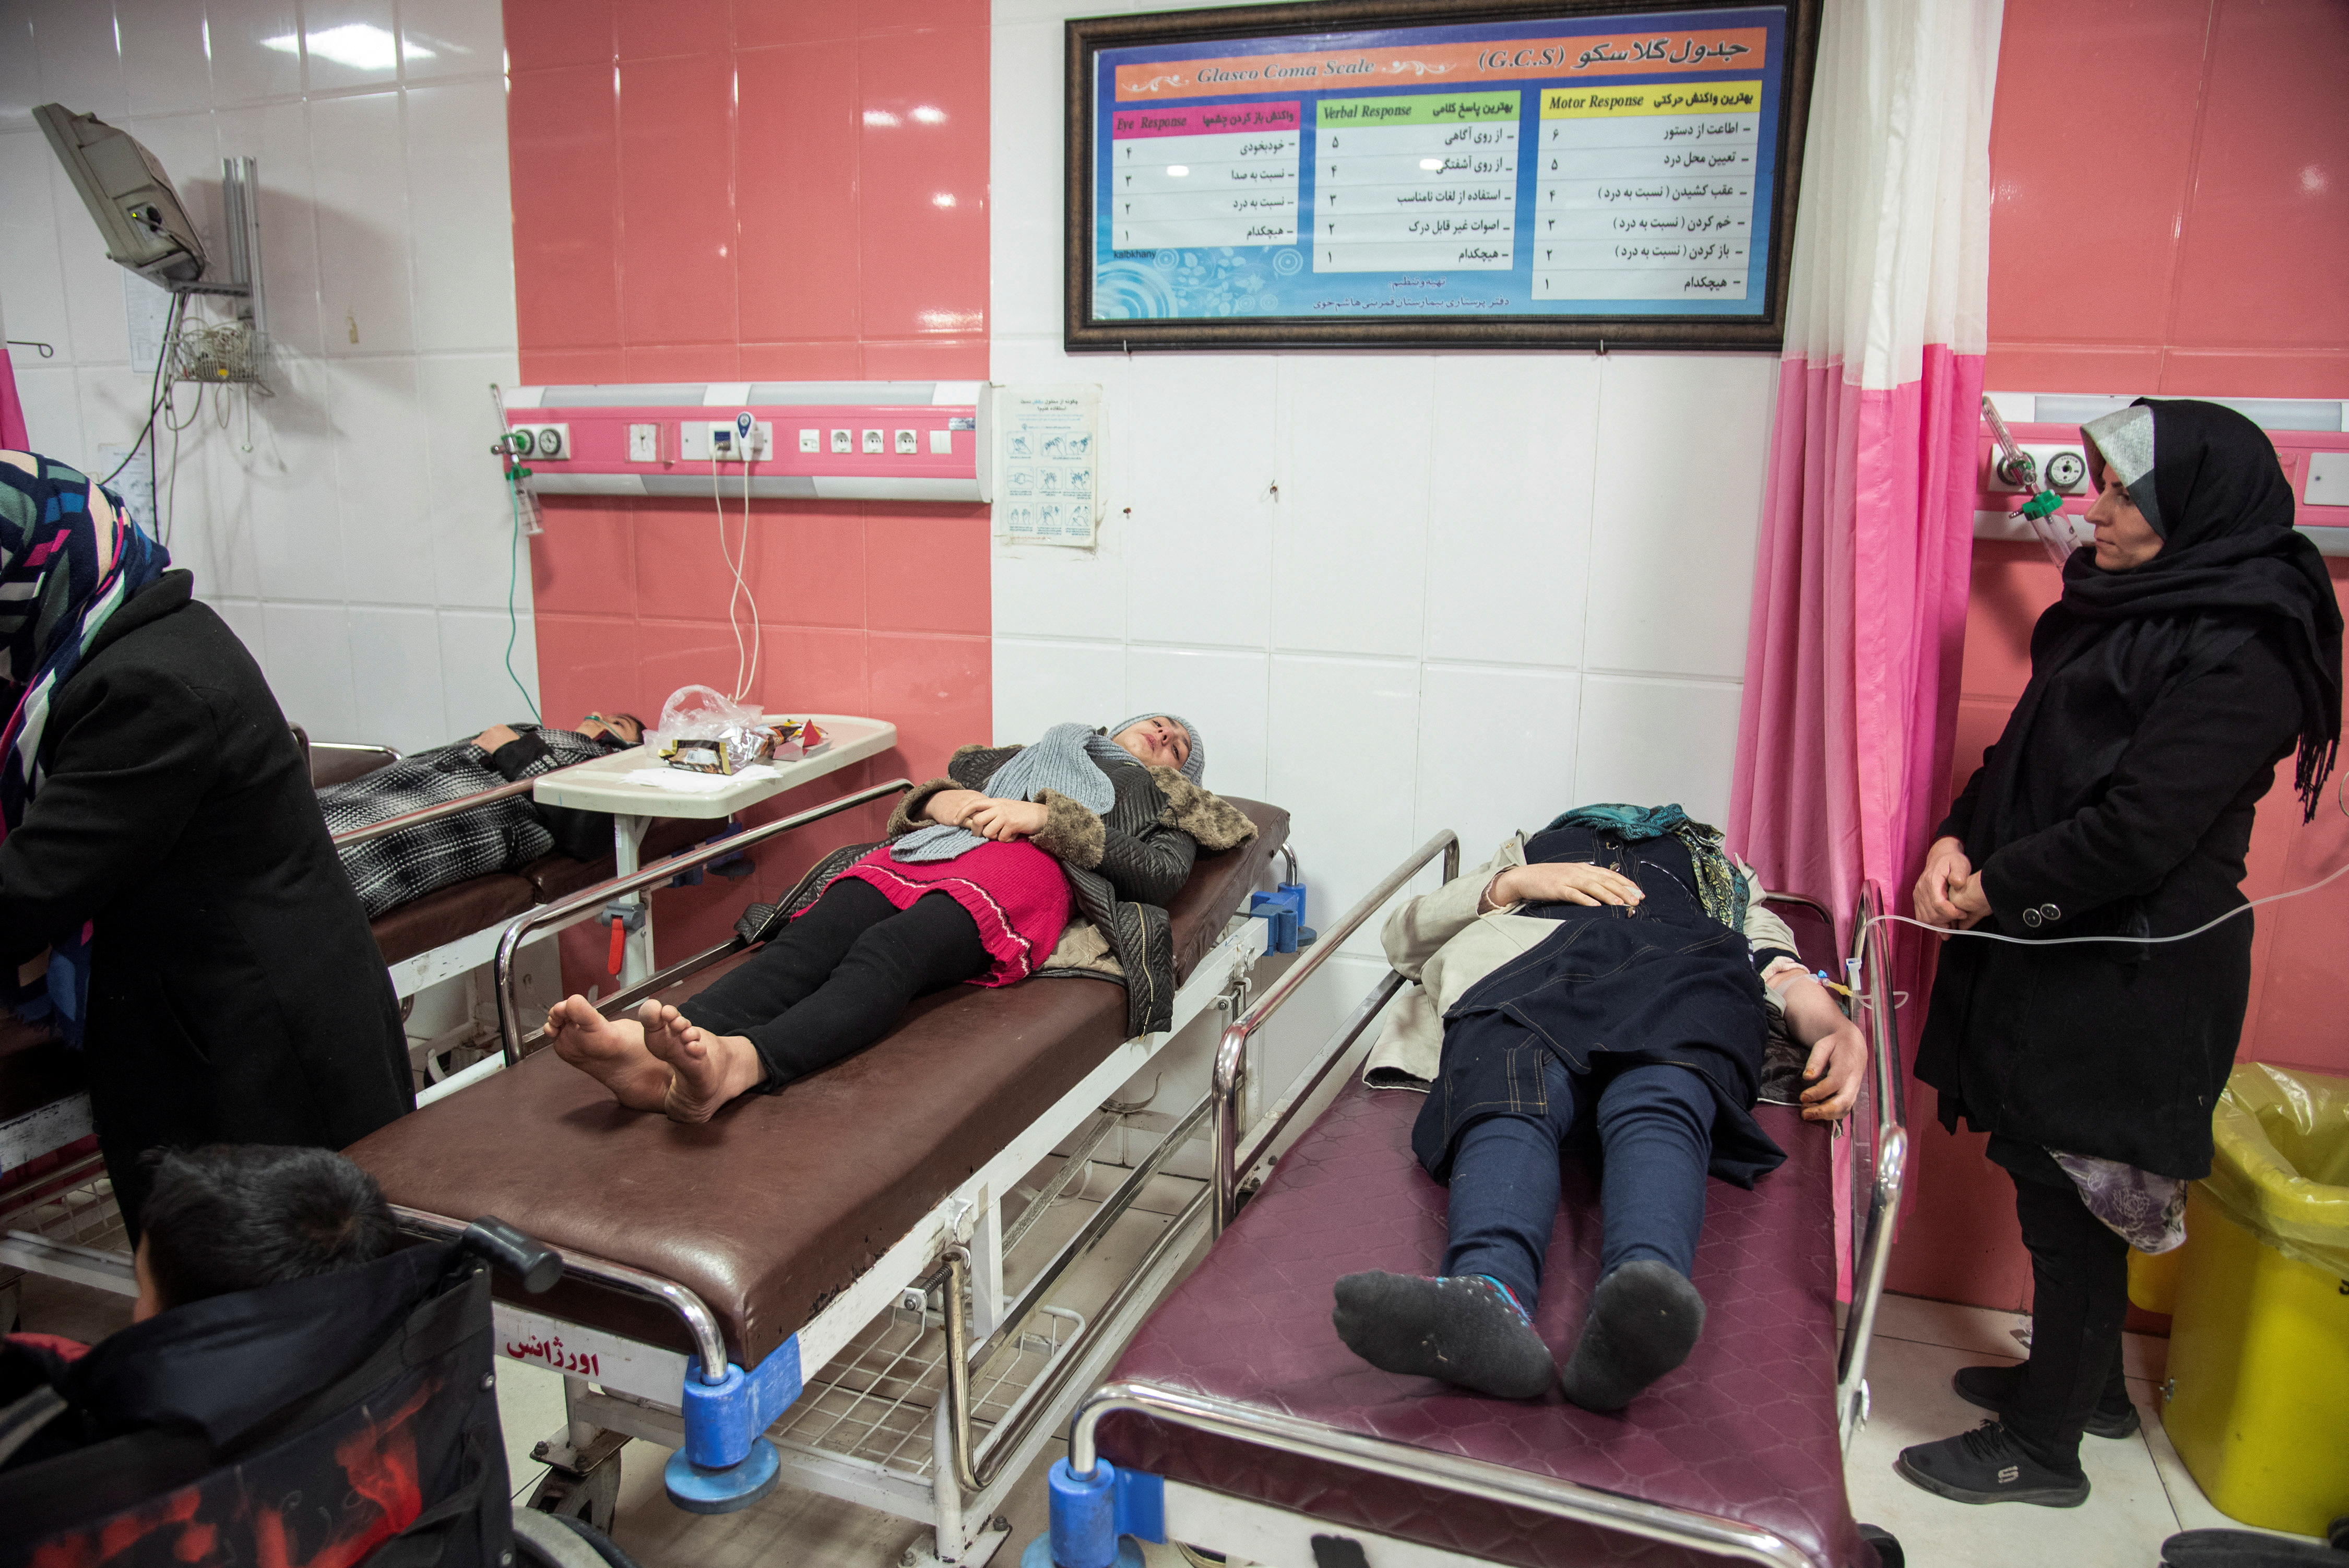 Heridos reciben atención médica en un hospital tras un terremoto, en el condado de Khoy, Azerbaiyán Occidental, Irán, 29 de enero de 2023. Soheil Faraji/ISNA/WANA (Agencia de Noticias de Asia Occidental) vía REUTERS 